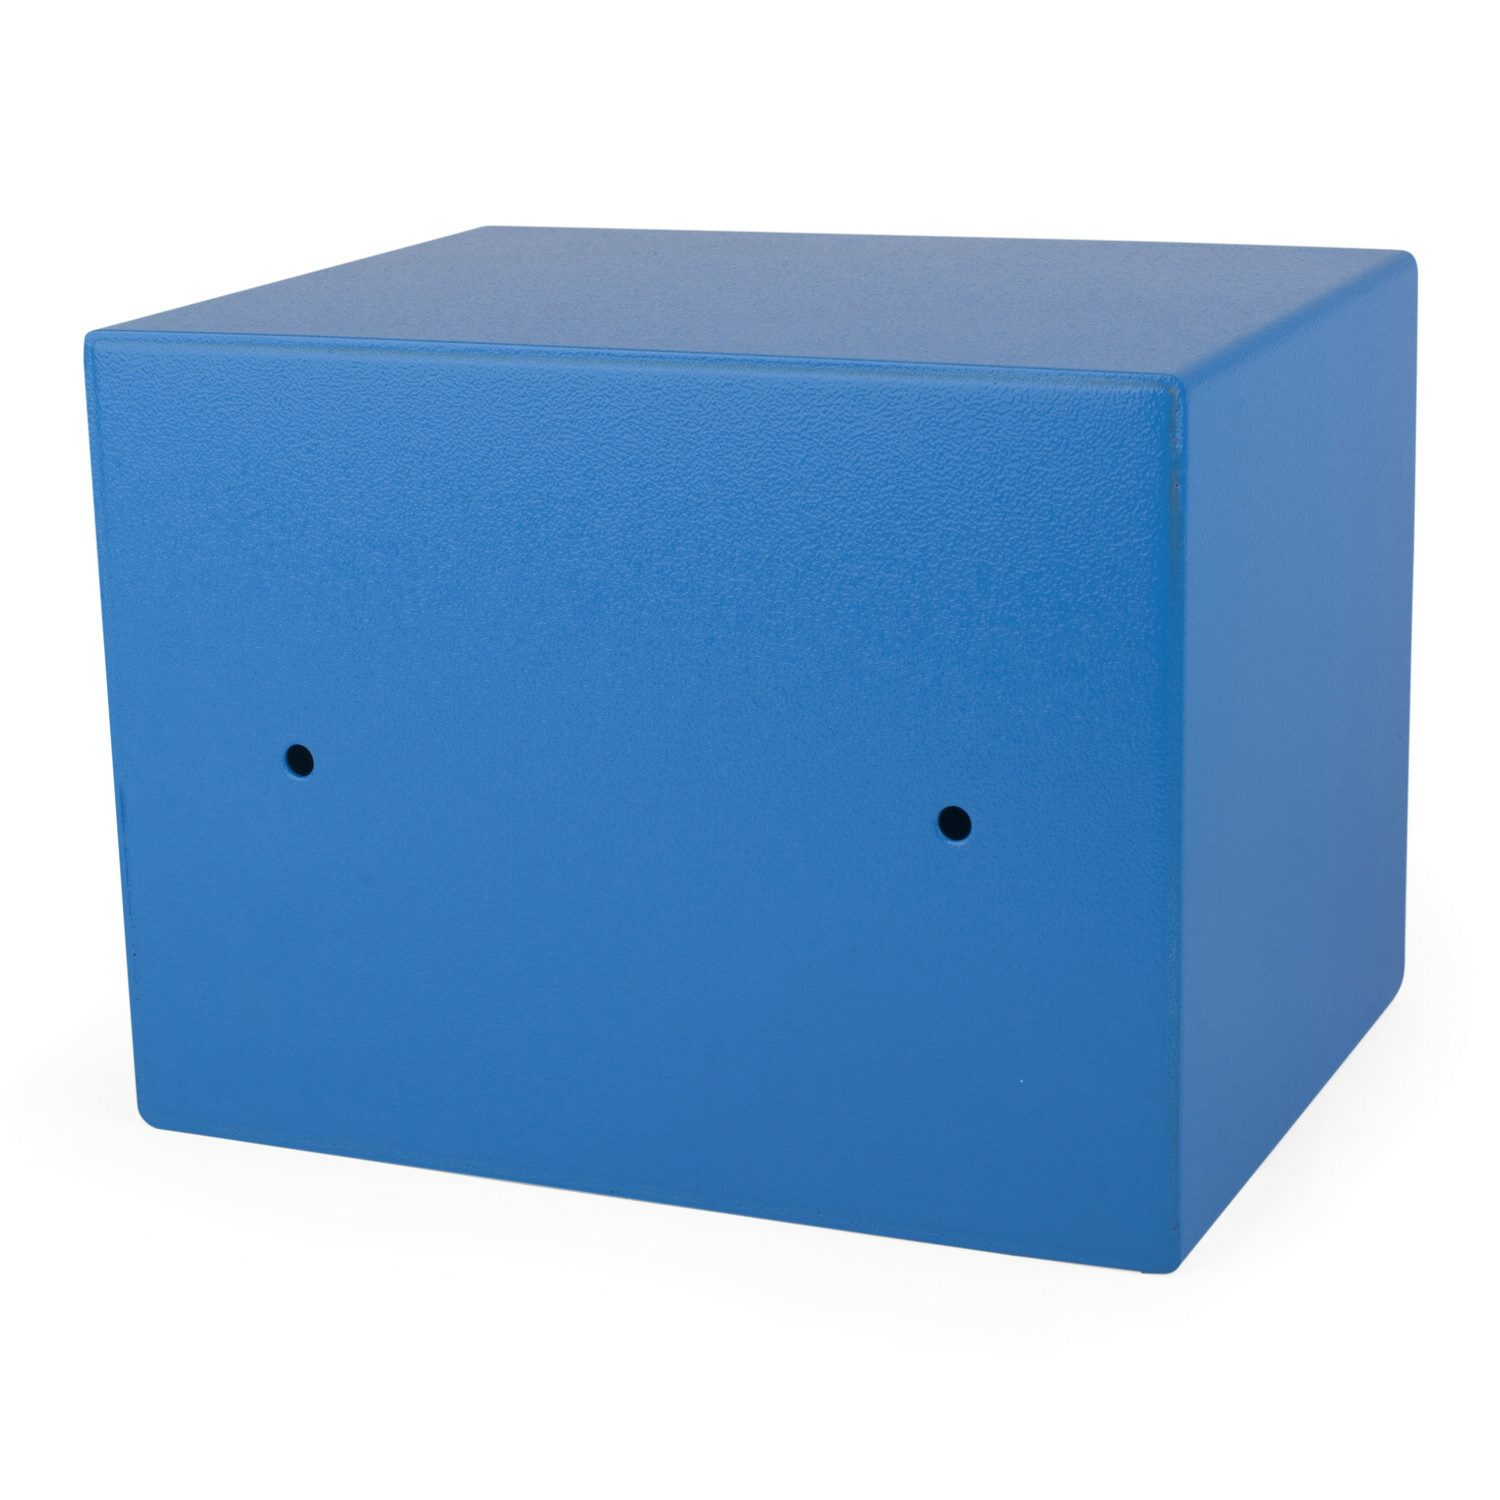 Tresor Safe 23x17x17cm mit elektronischem  Zahlenschloss fr Tisch/Wandmontage blau